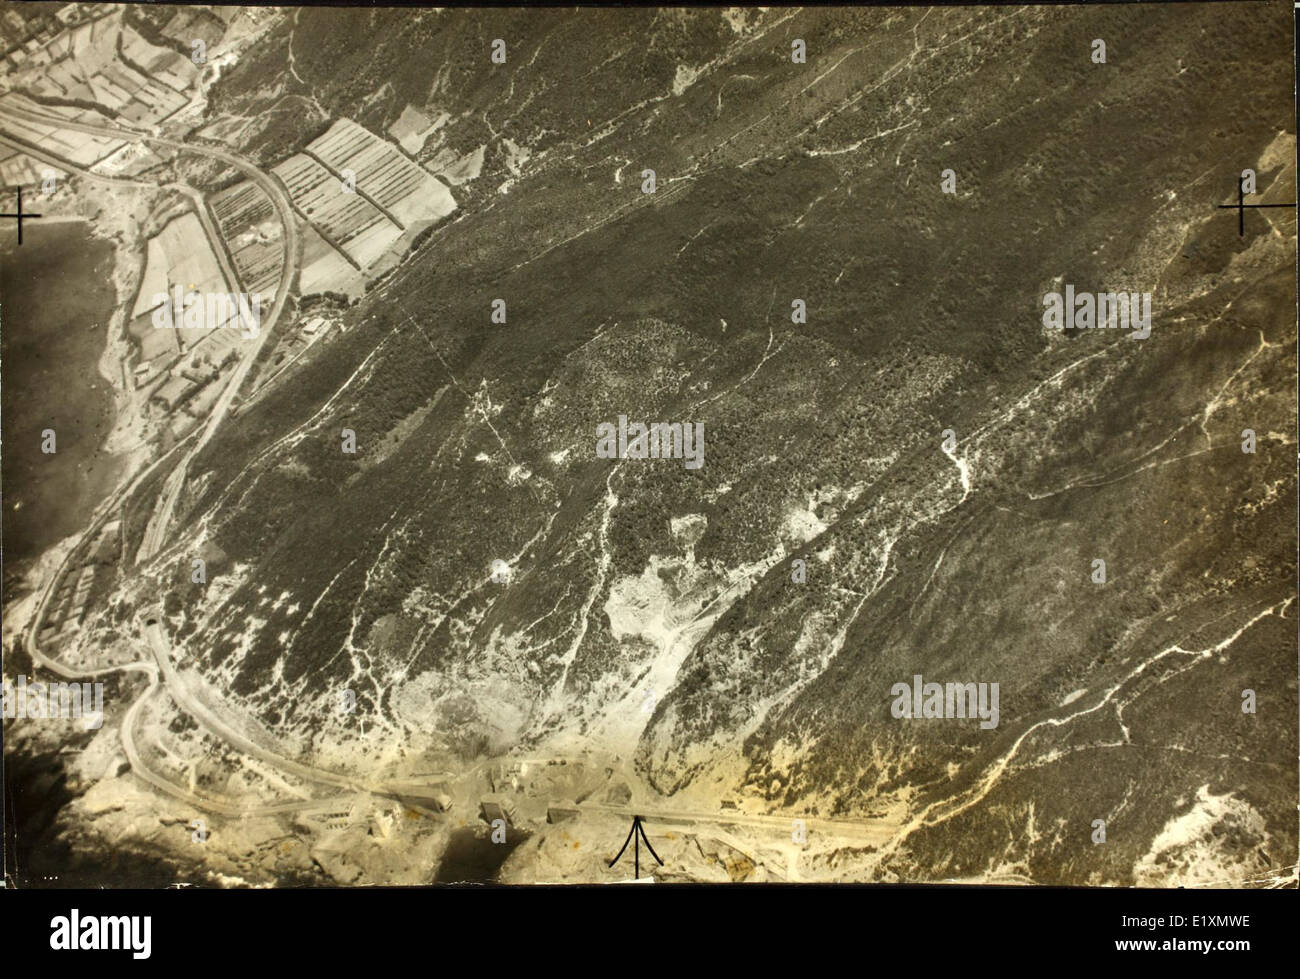 Photo Vue aérienne de reconnaissance Livourne, Italie Coopération étrangler Banque D'Images